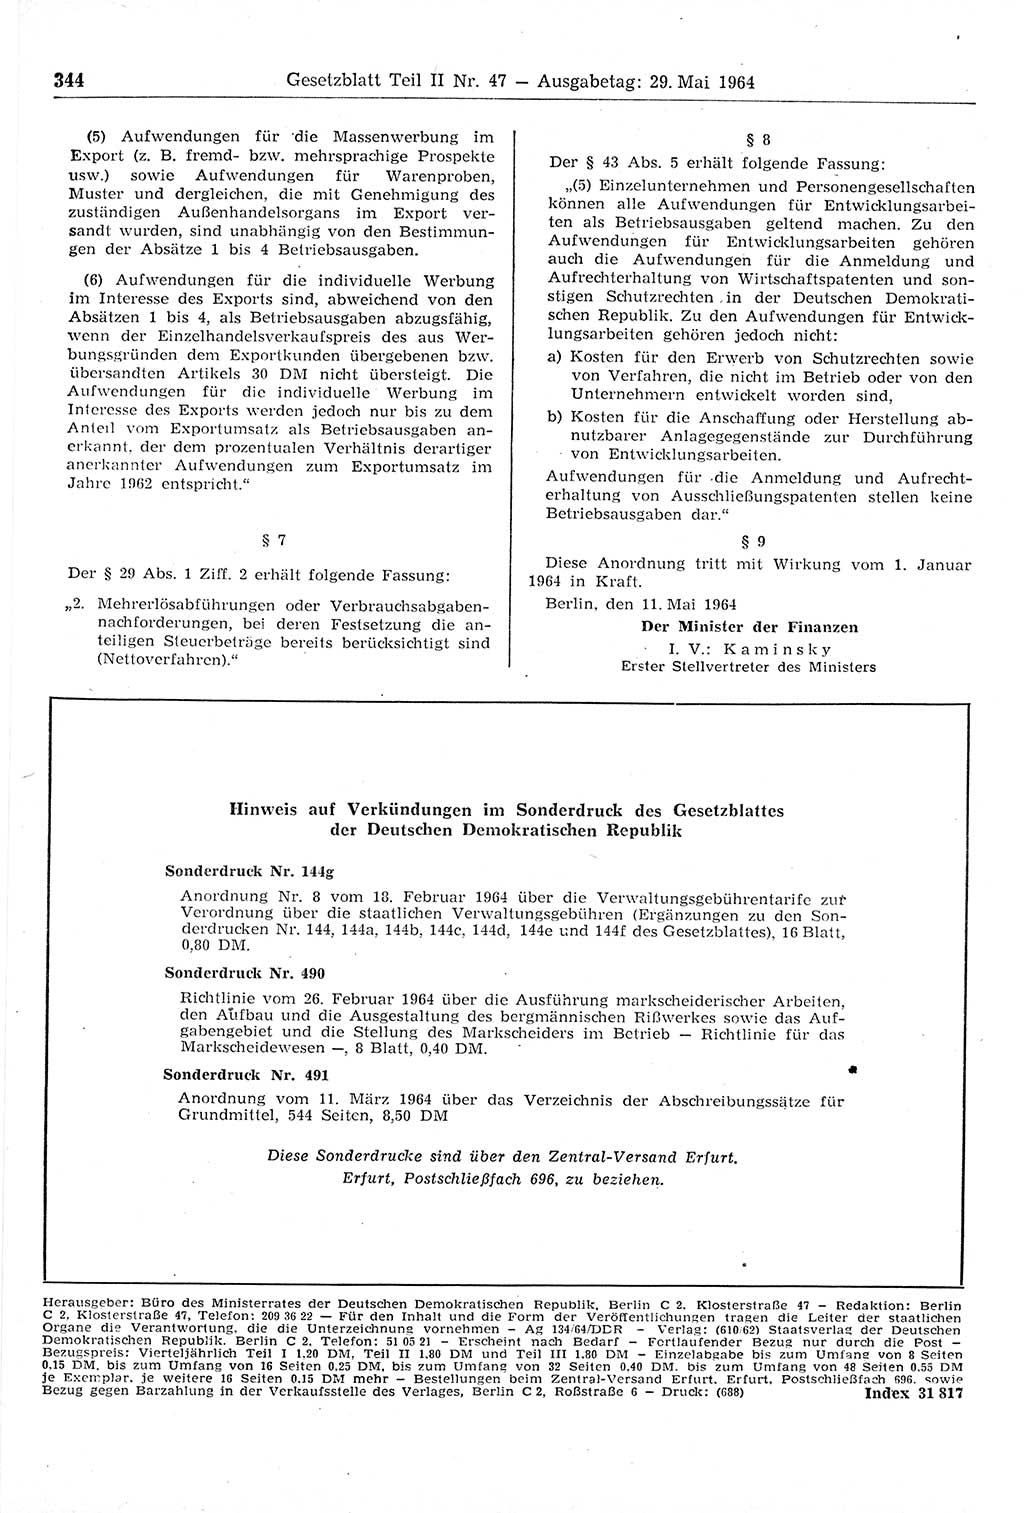 Gesetzblatt (GBl.) der Deutschen Demokratischen Republik (DDR) Teil ⅠⅠ 1964, Seite 344 (GBl. DDR ⅠⅠ 1964, S. 344)